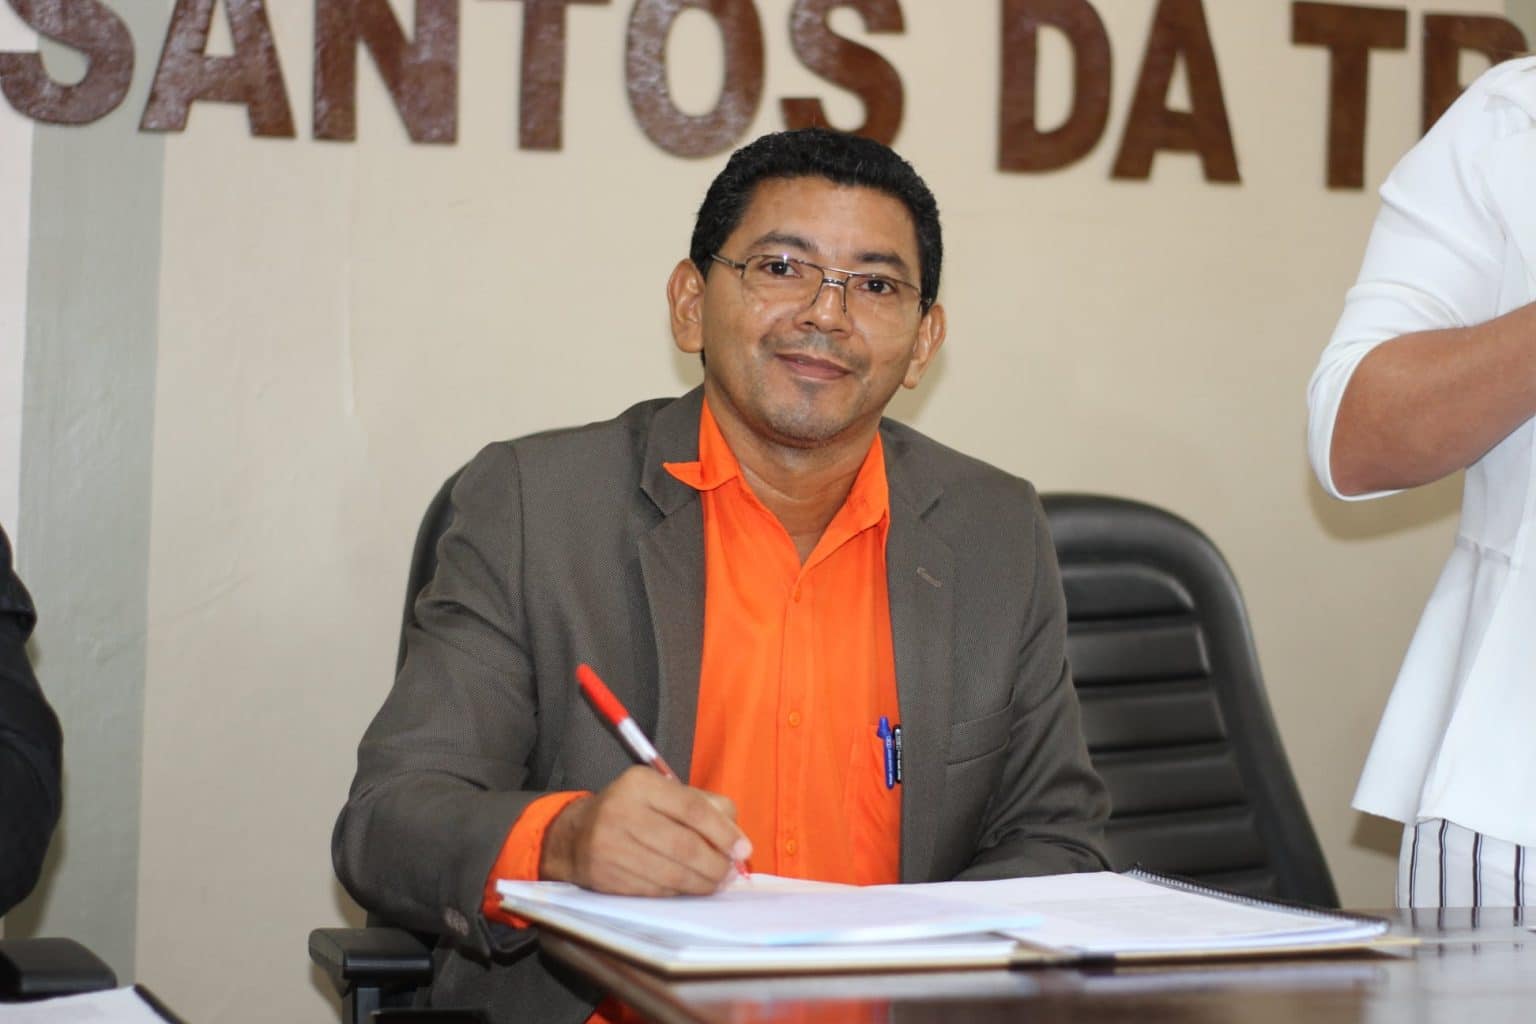 Justiça determina retorno do prefeito afastado por vereadores em Serra do Navio